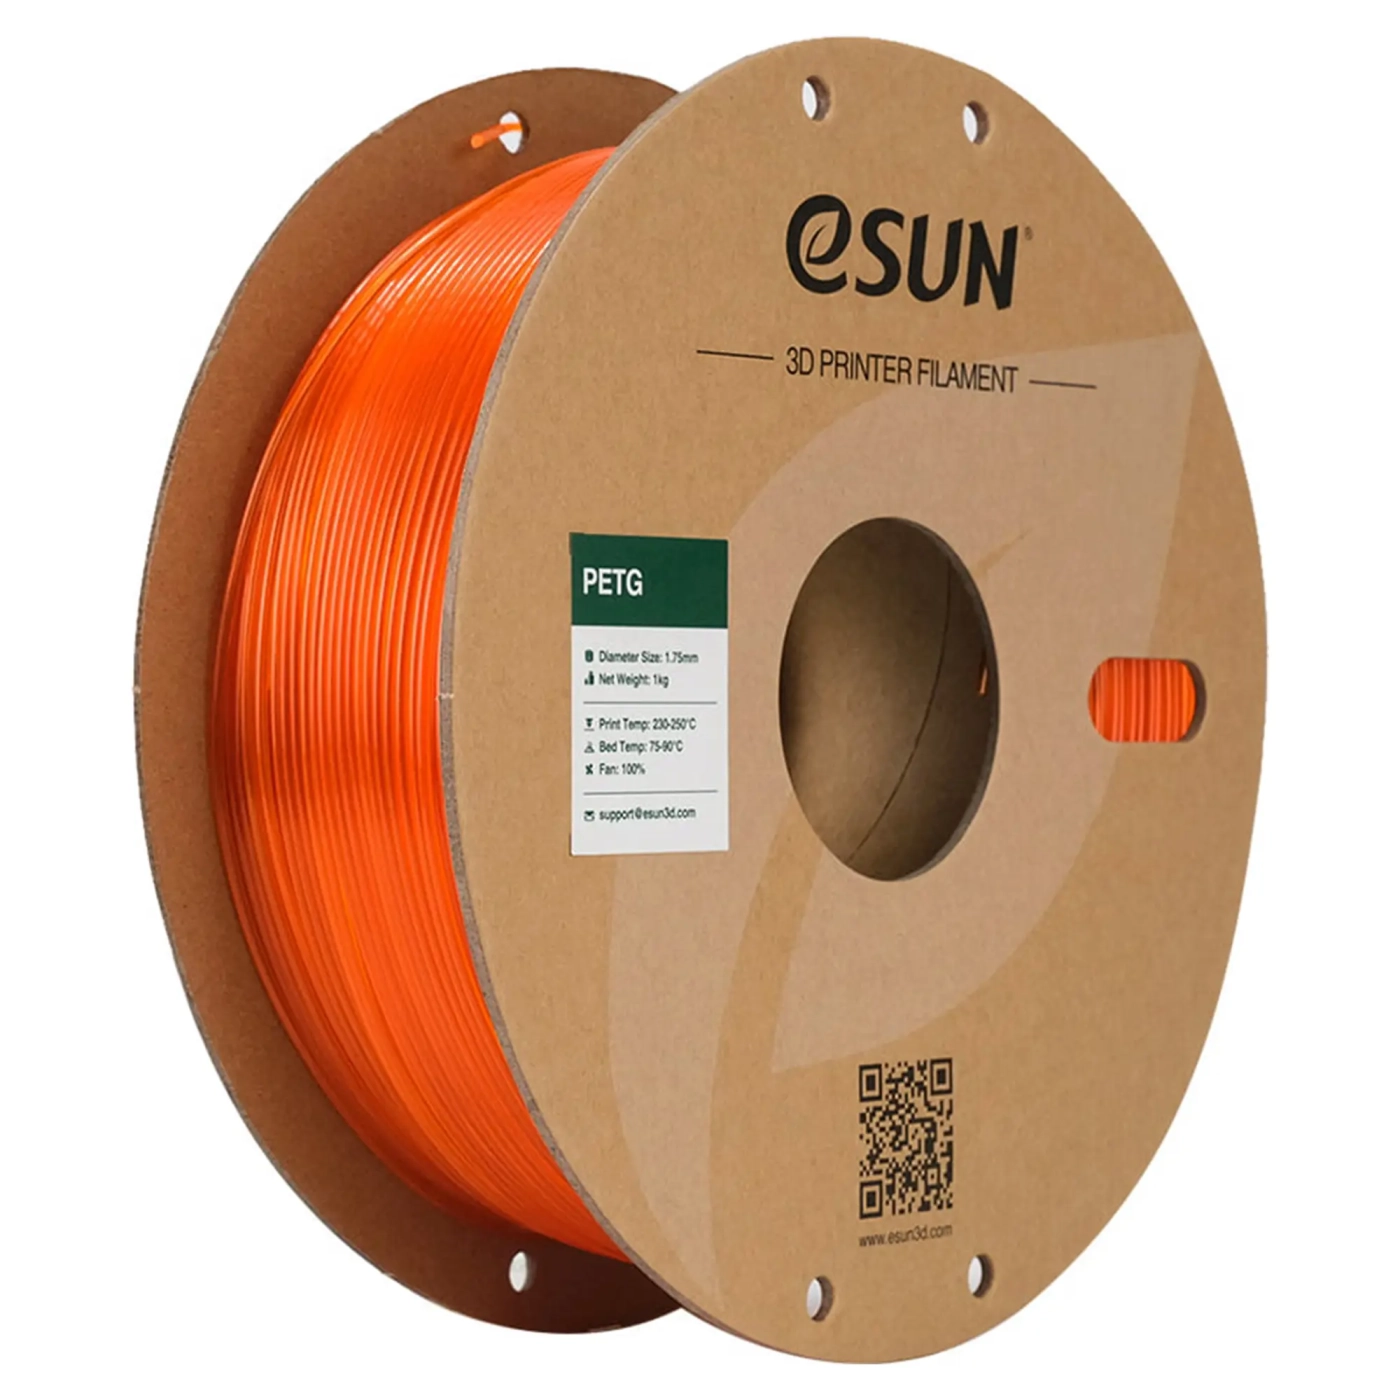 Купить PETG Filament (пластик) для 3D принтера eSUN 1кг, 1.75мм, оранжевый (PETG175O1) - фото 1